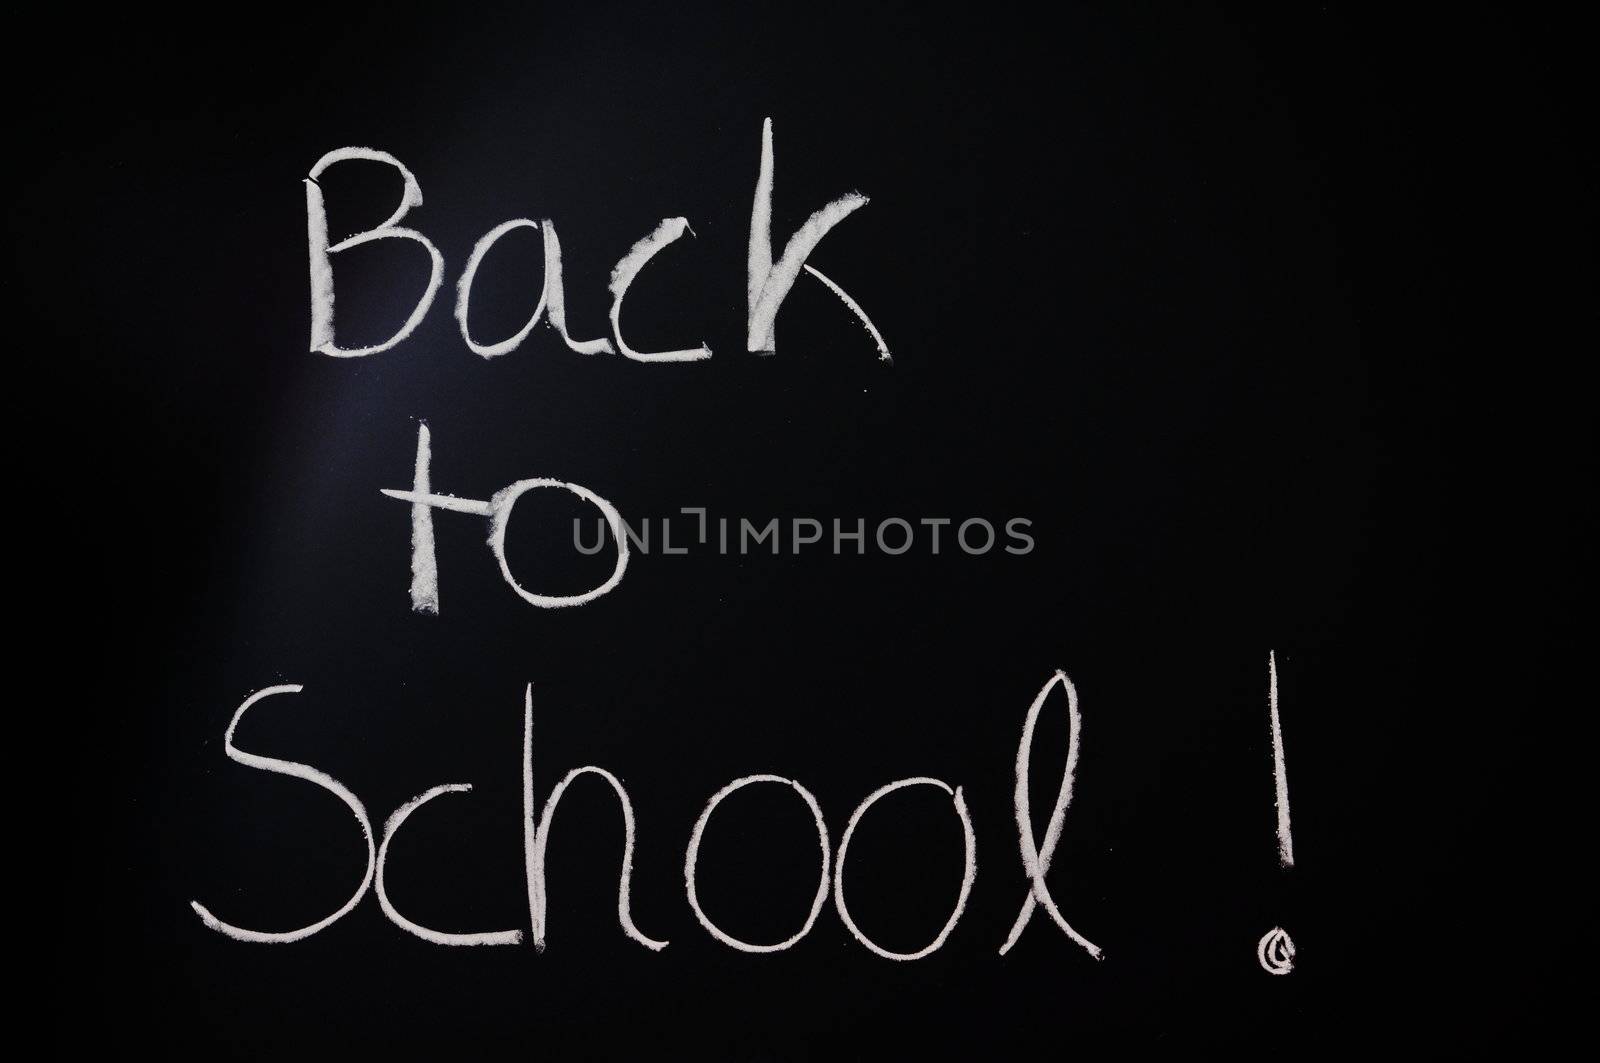 blackboard or chalkboard showing education or school concept